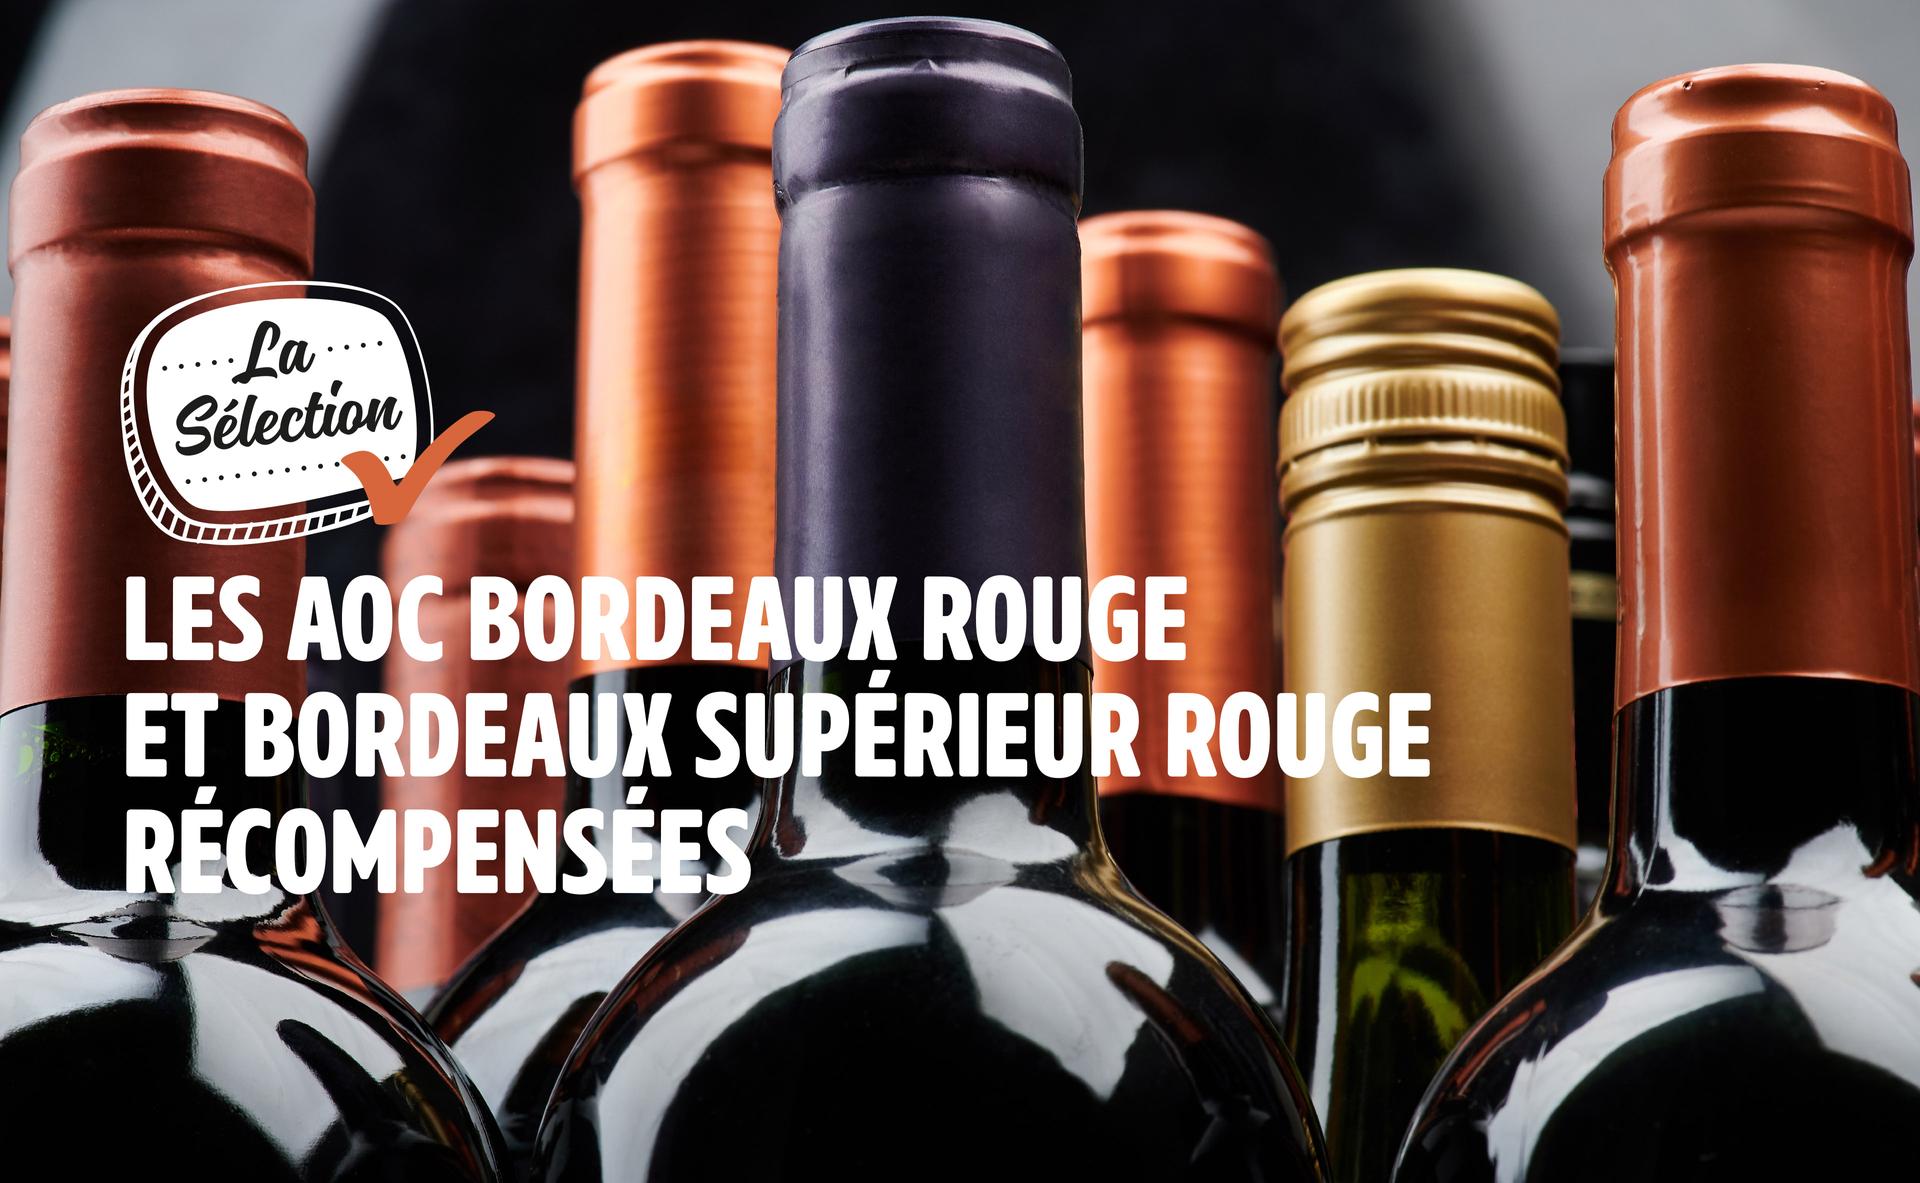 Talents de Bordeaux 2020 : découvrez les 12 vins lauréats